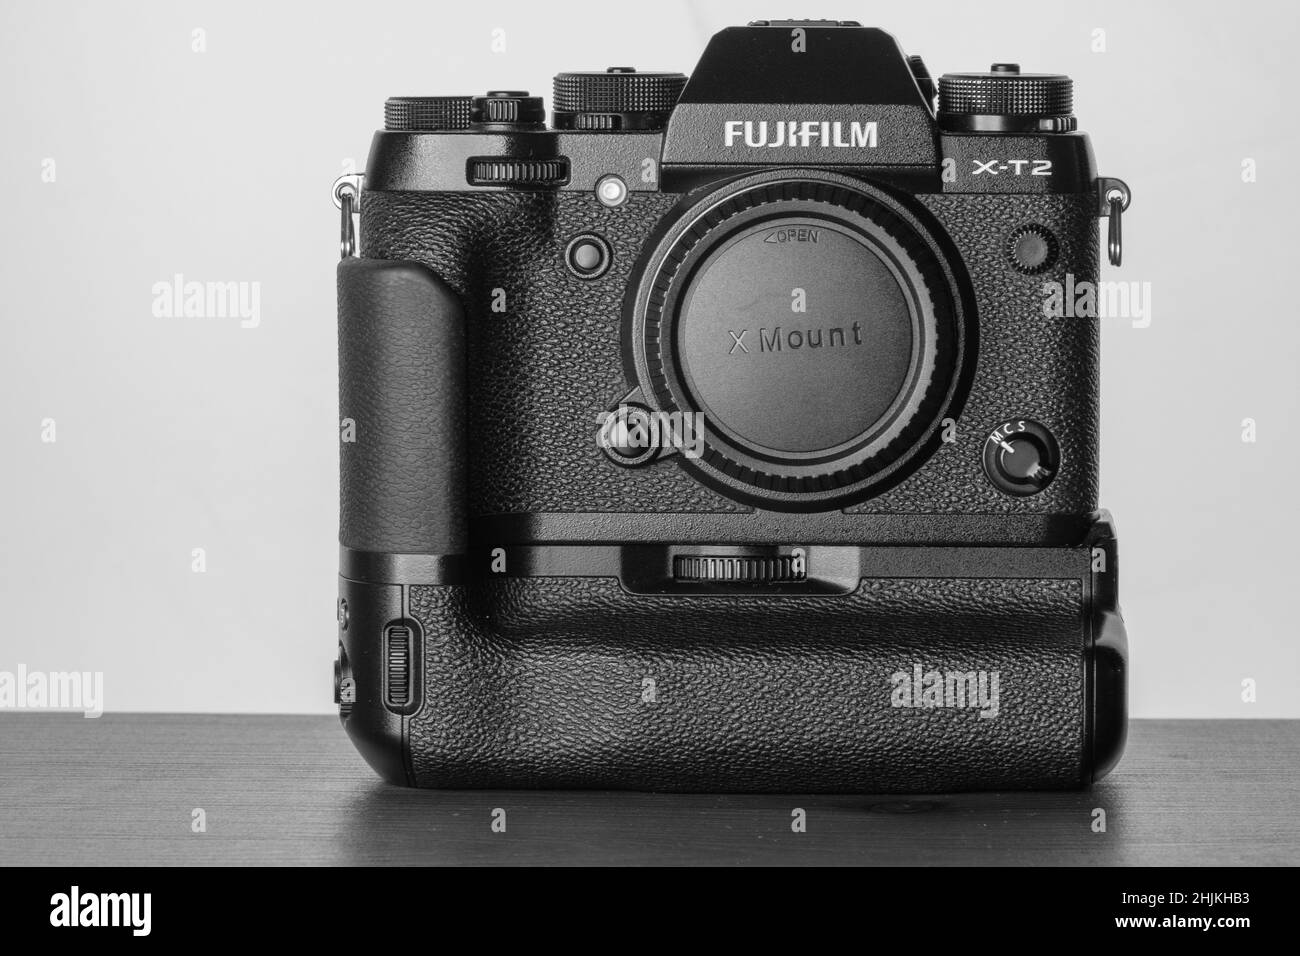 Vista de la cámara aps-c de película Fuji sin espejo con empuñadura en blanco y negro Foto de stock